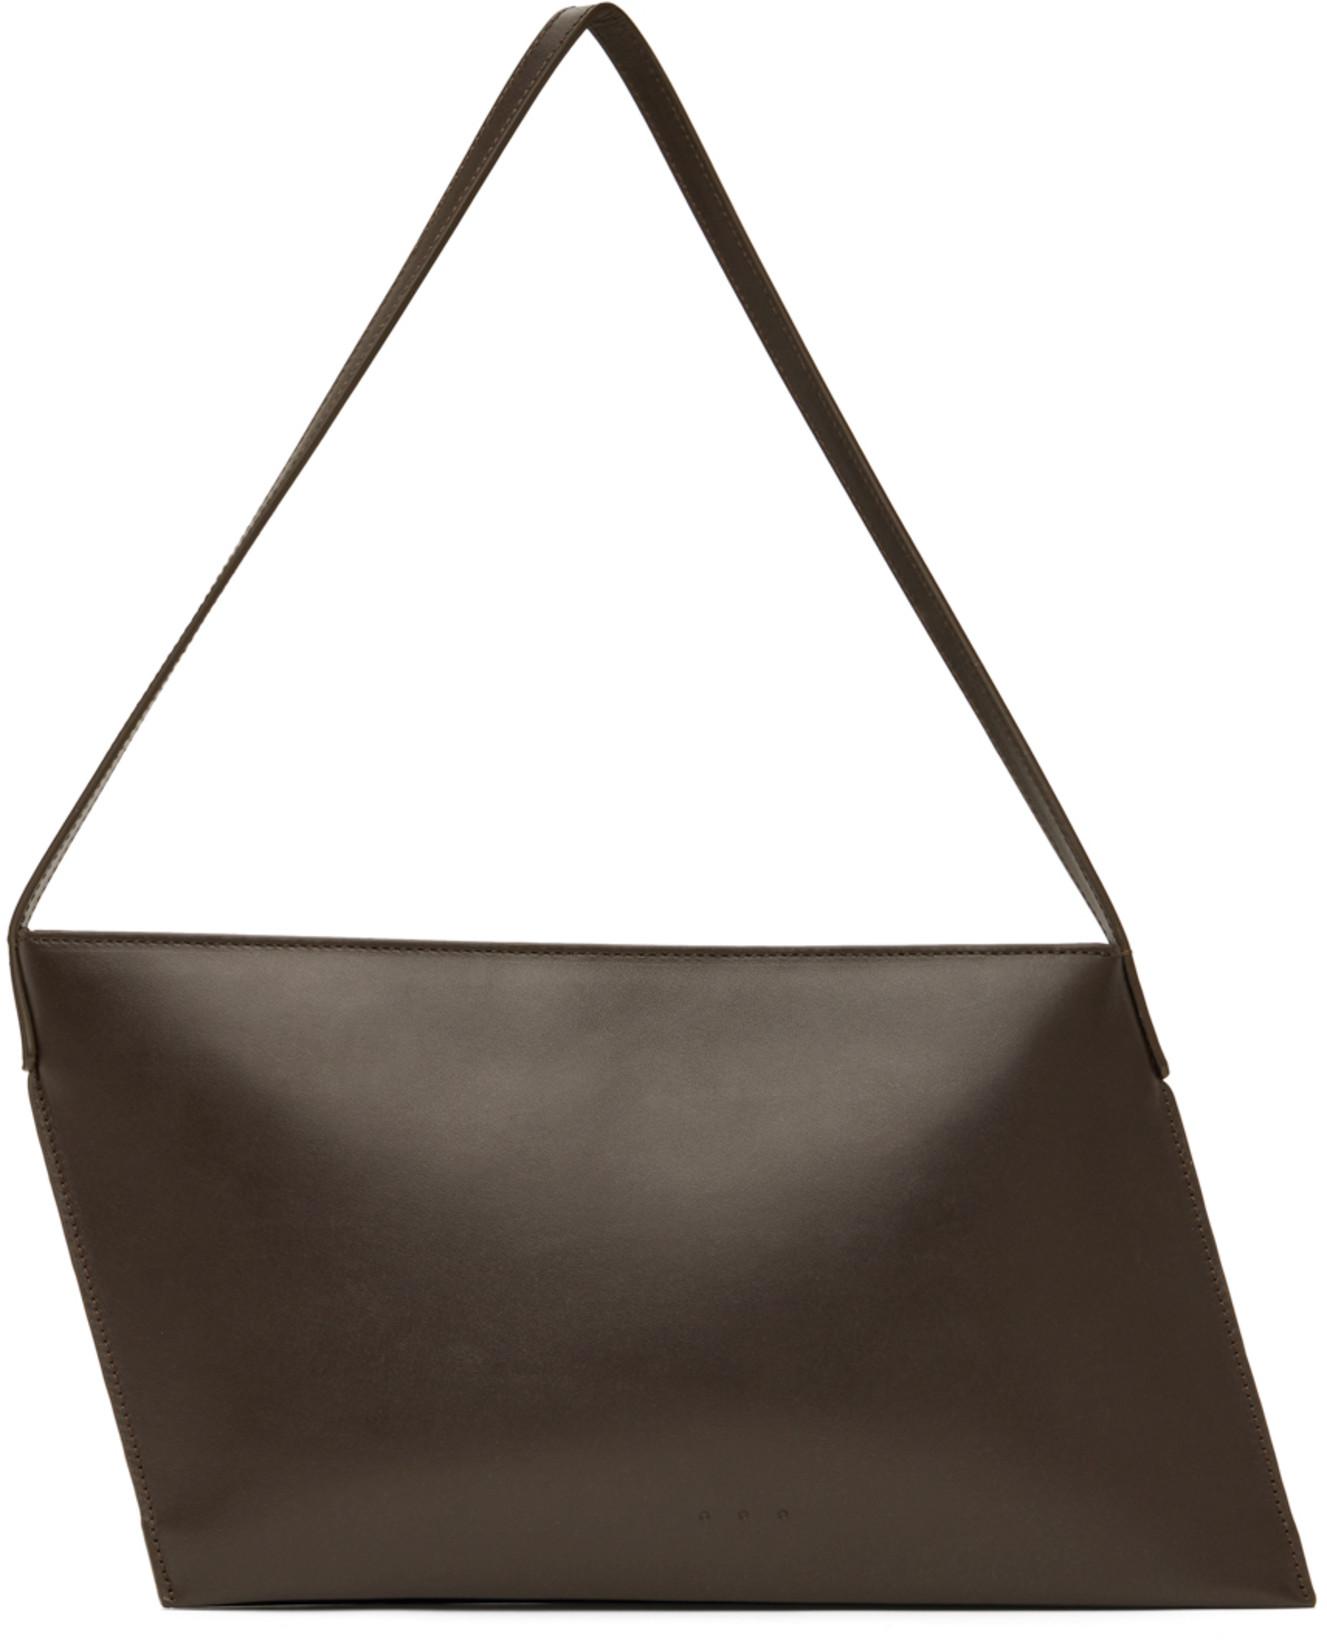 Brown Angle Bag by AESTHER EKME